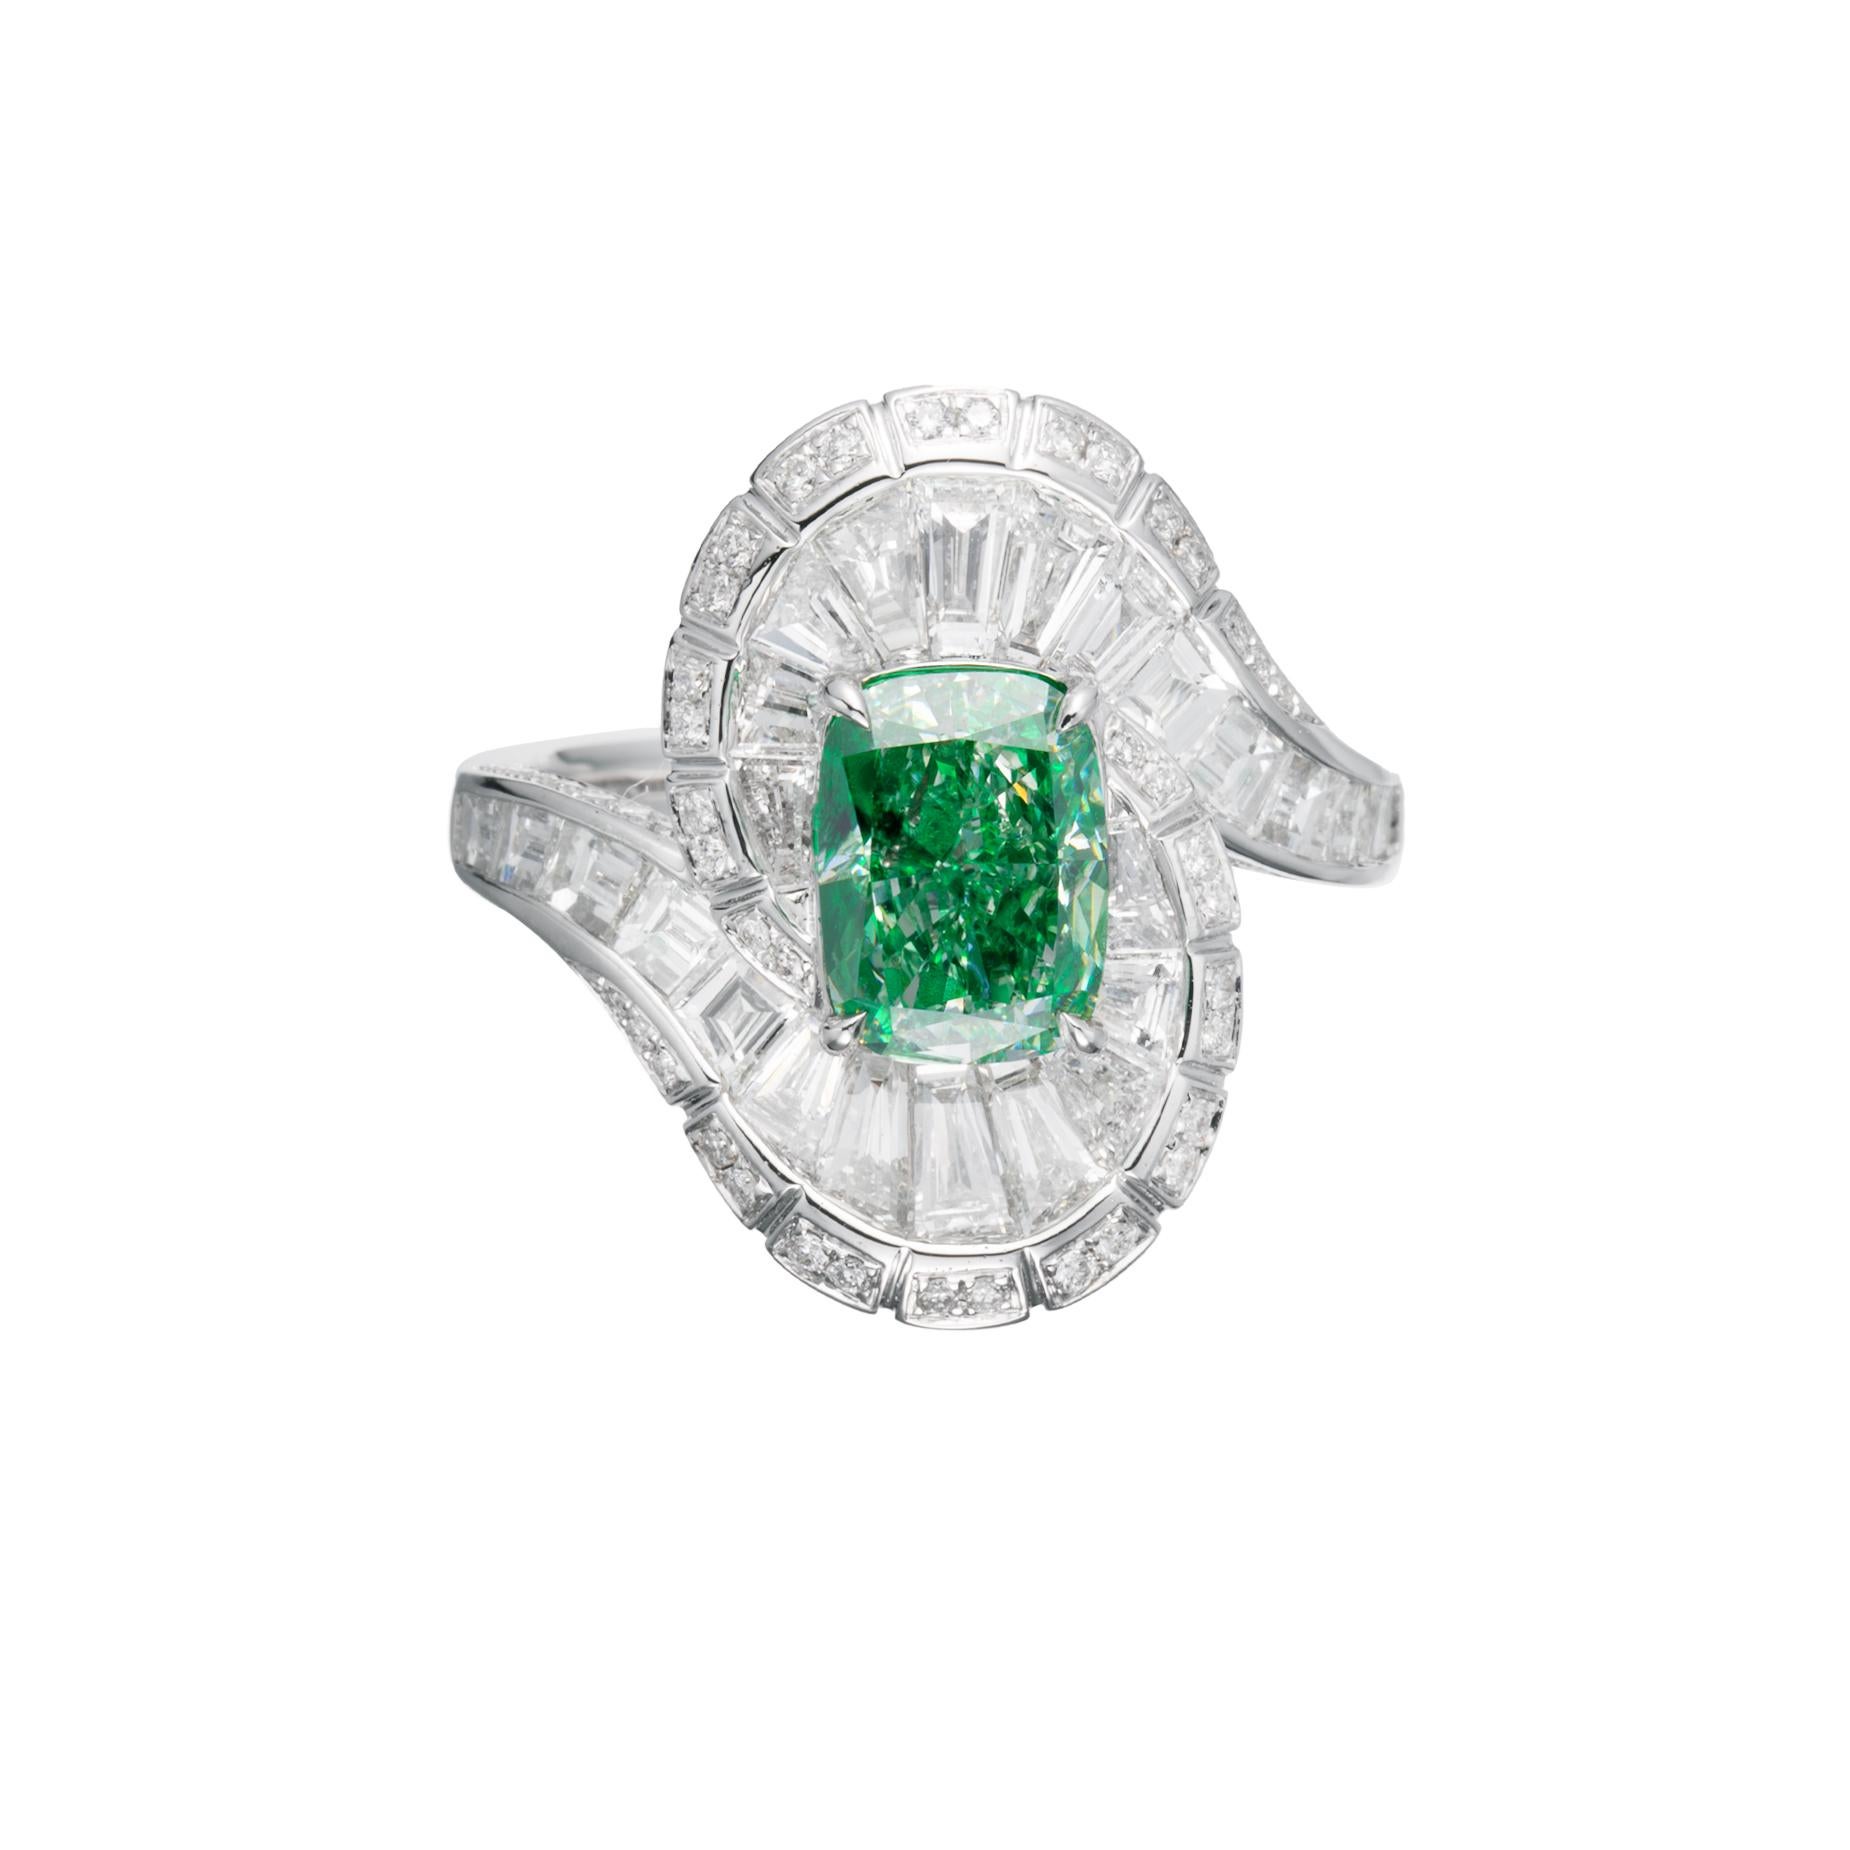 Dieser exquisite Ring ist mit einem atemberaubenden kissenförmigen Diamanten von 2,02 Karat besetzt, der in ein elegantes 18-karätiges Goldband eingefasst ist. Im Mittelpunkt dieses Rings steht ein GIA-zertifizierter Fancy Yellowish Green-Diamant